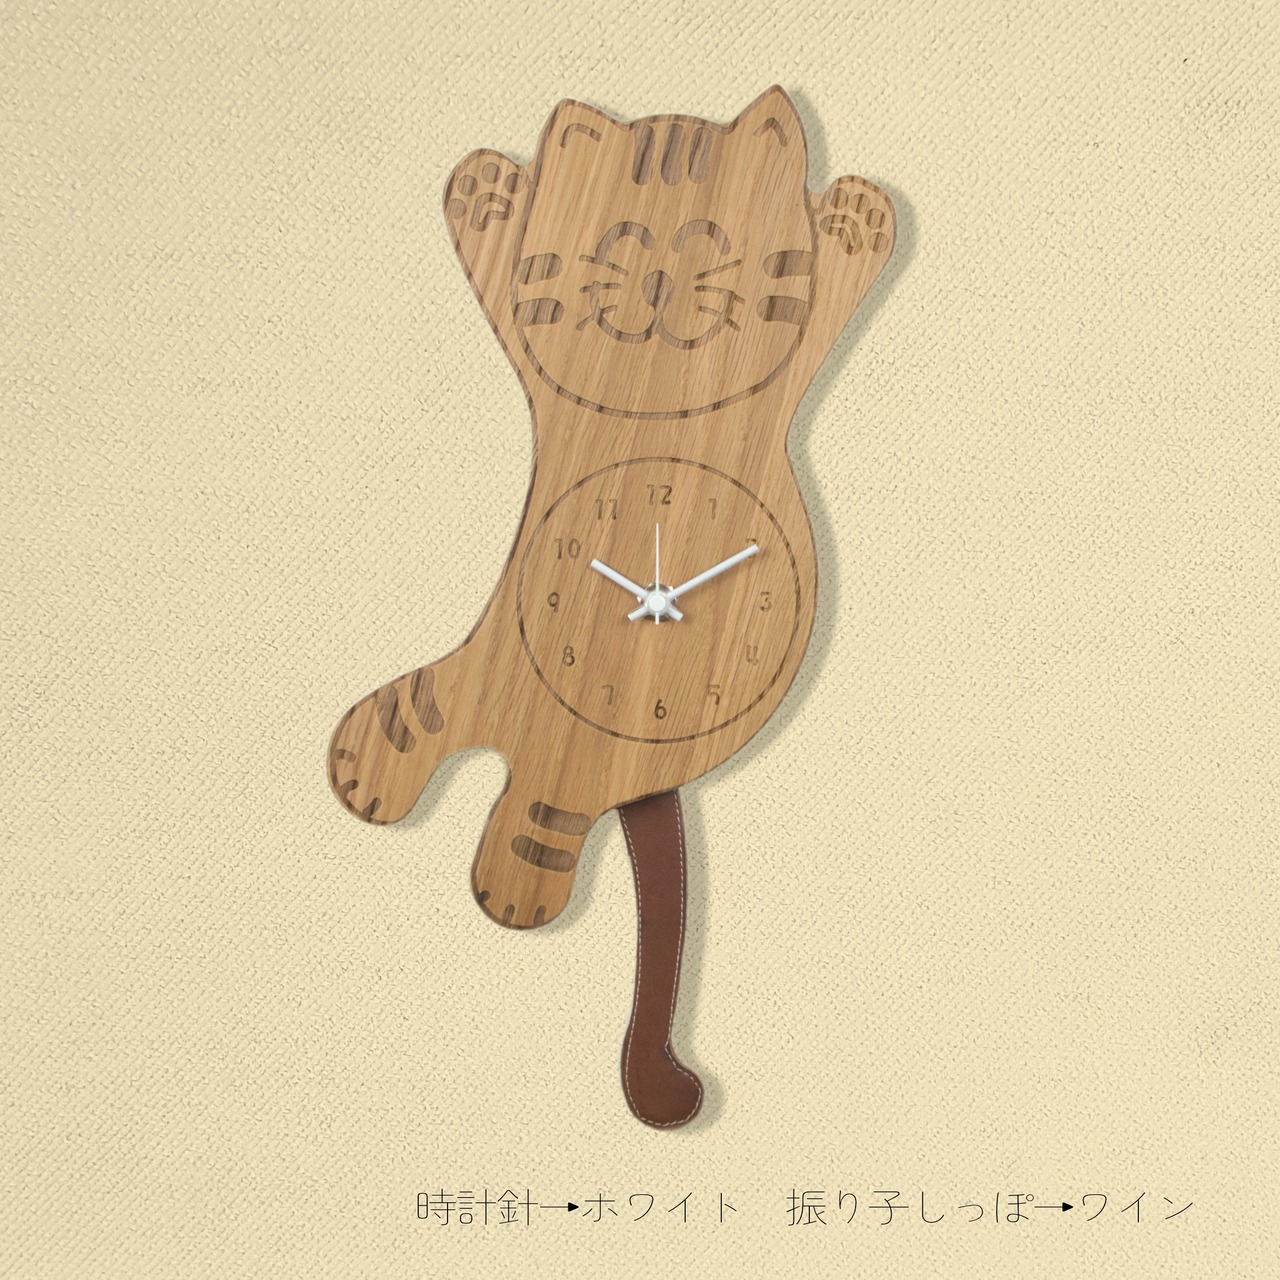 Cat Furiko clock